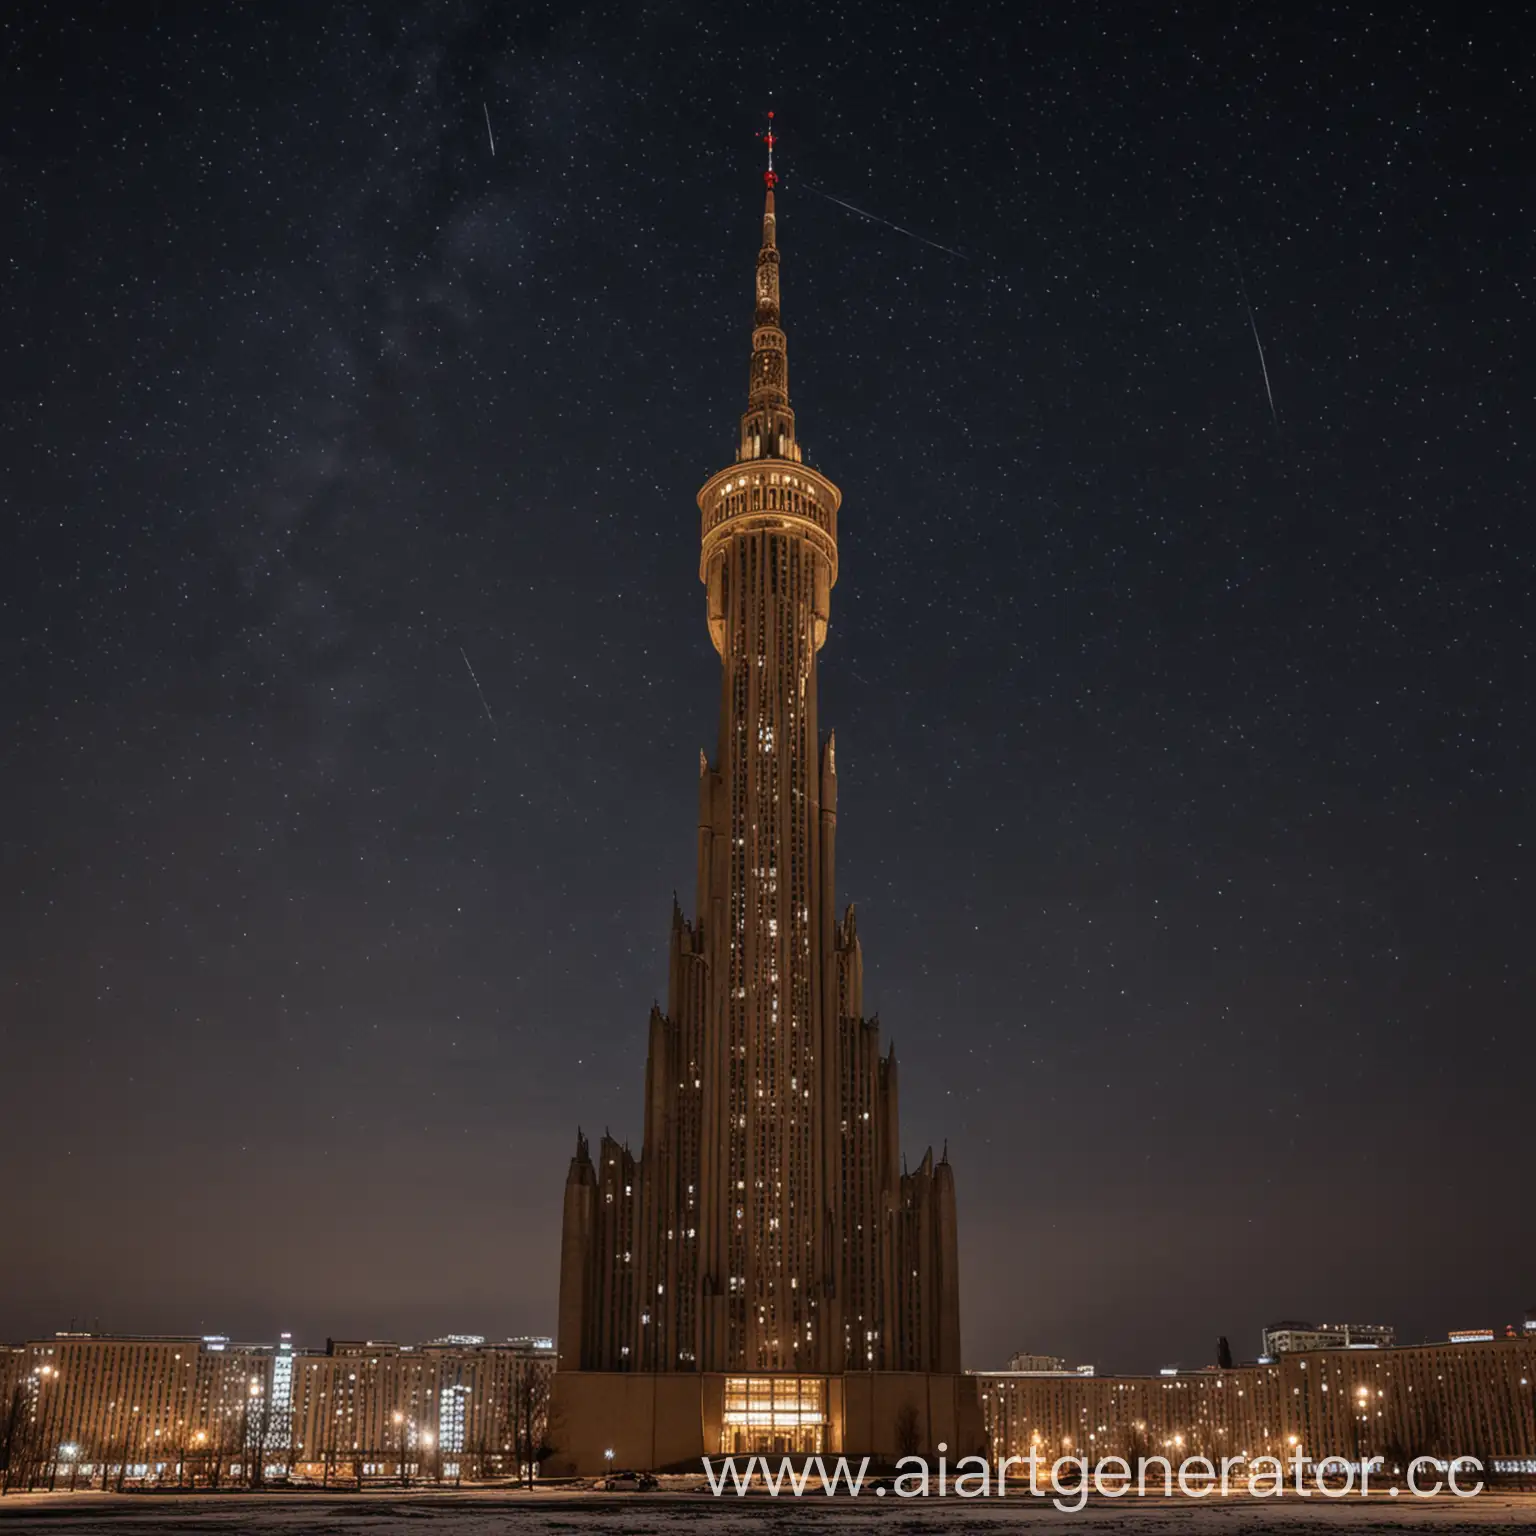 большое, странное, высокое советское здание, округлые формы, высокий шпиль, ночь, звездное небо на фоне